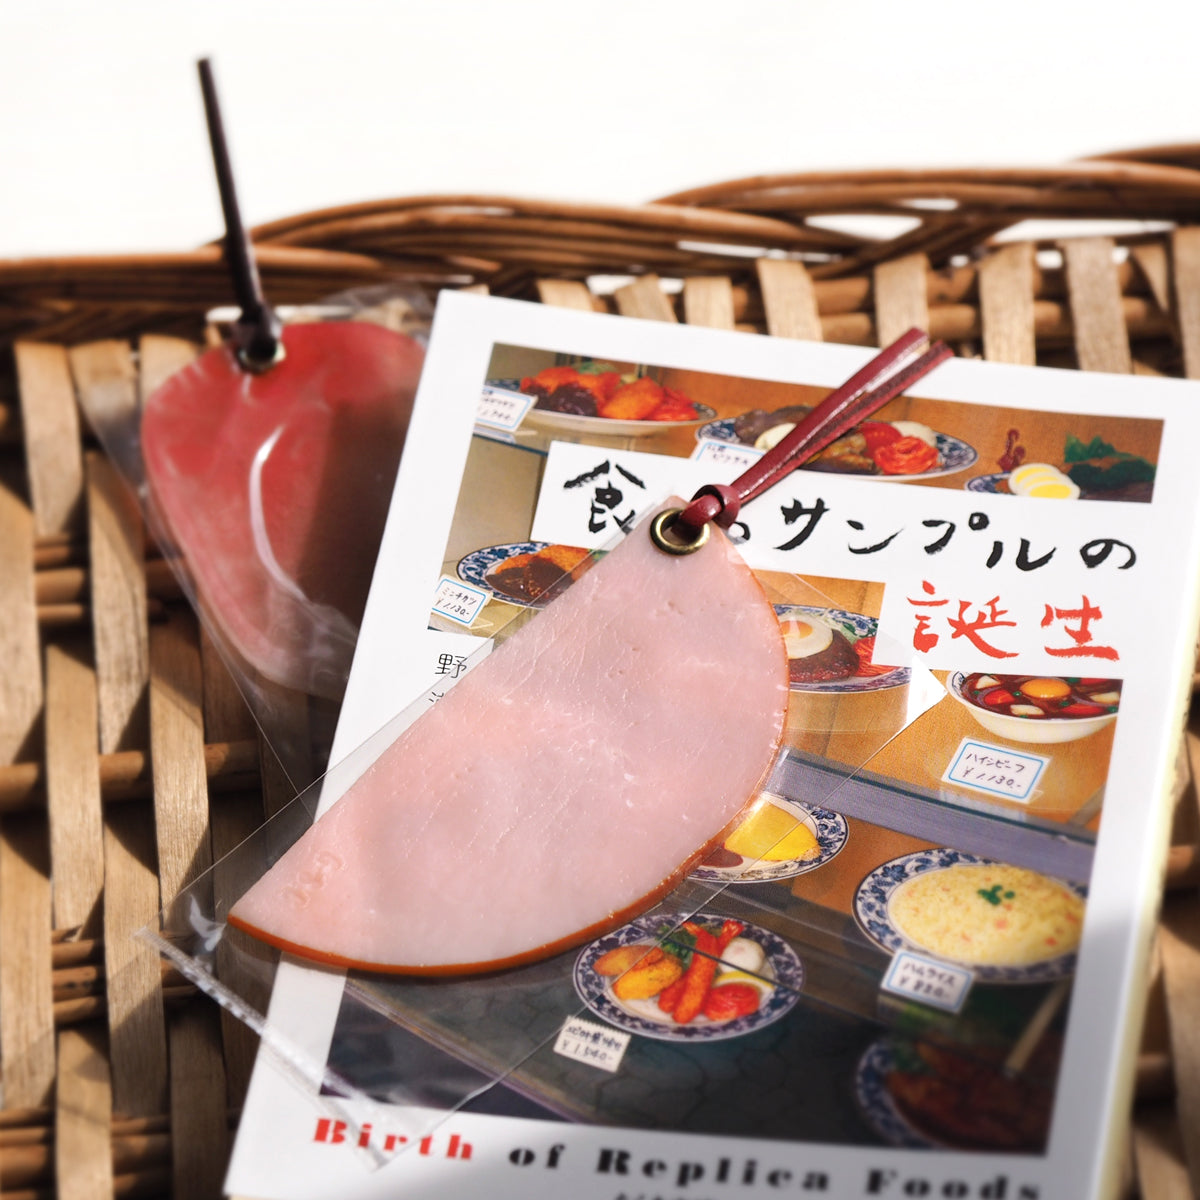 元祖食品サンプル屋「ロースハムのブックマーク」の本の上に置いた商品イメージ画像です。